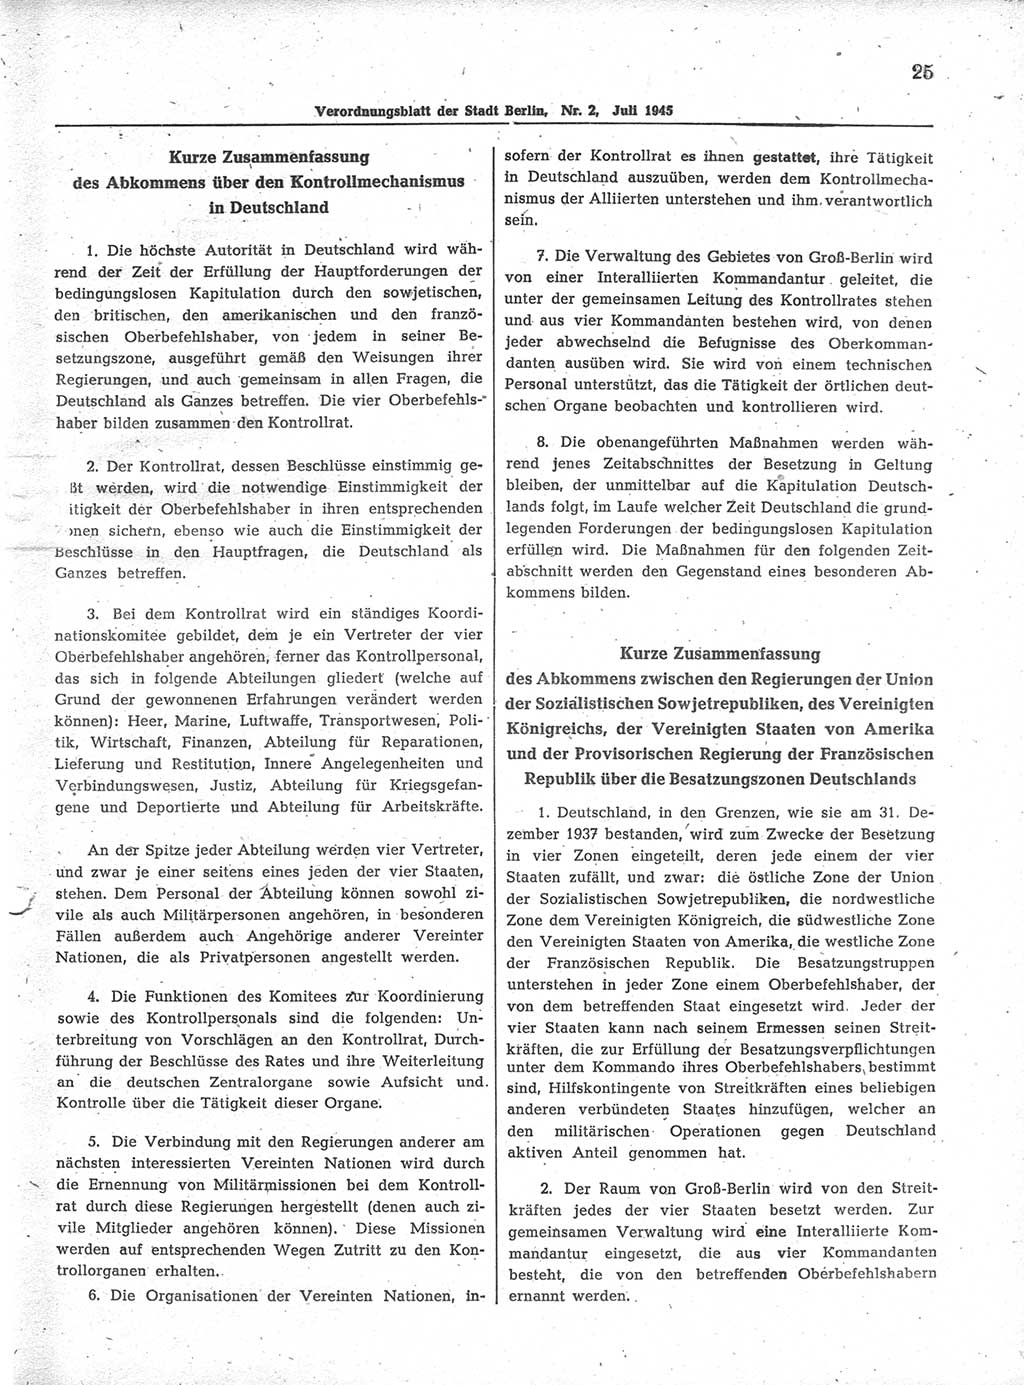 Verordnungsblatt (VOBl.) der Stadt Berlin 1945, Seite 25 (VOBl. Bln. 1945, S. 25)